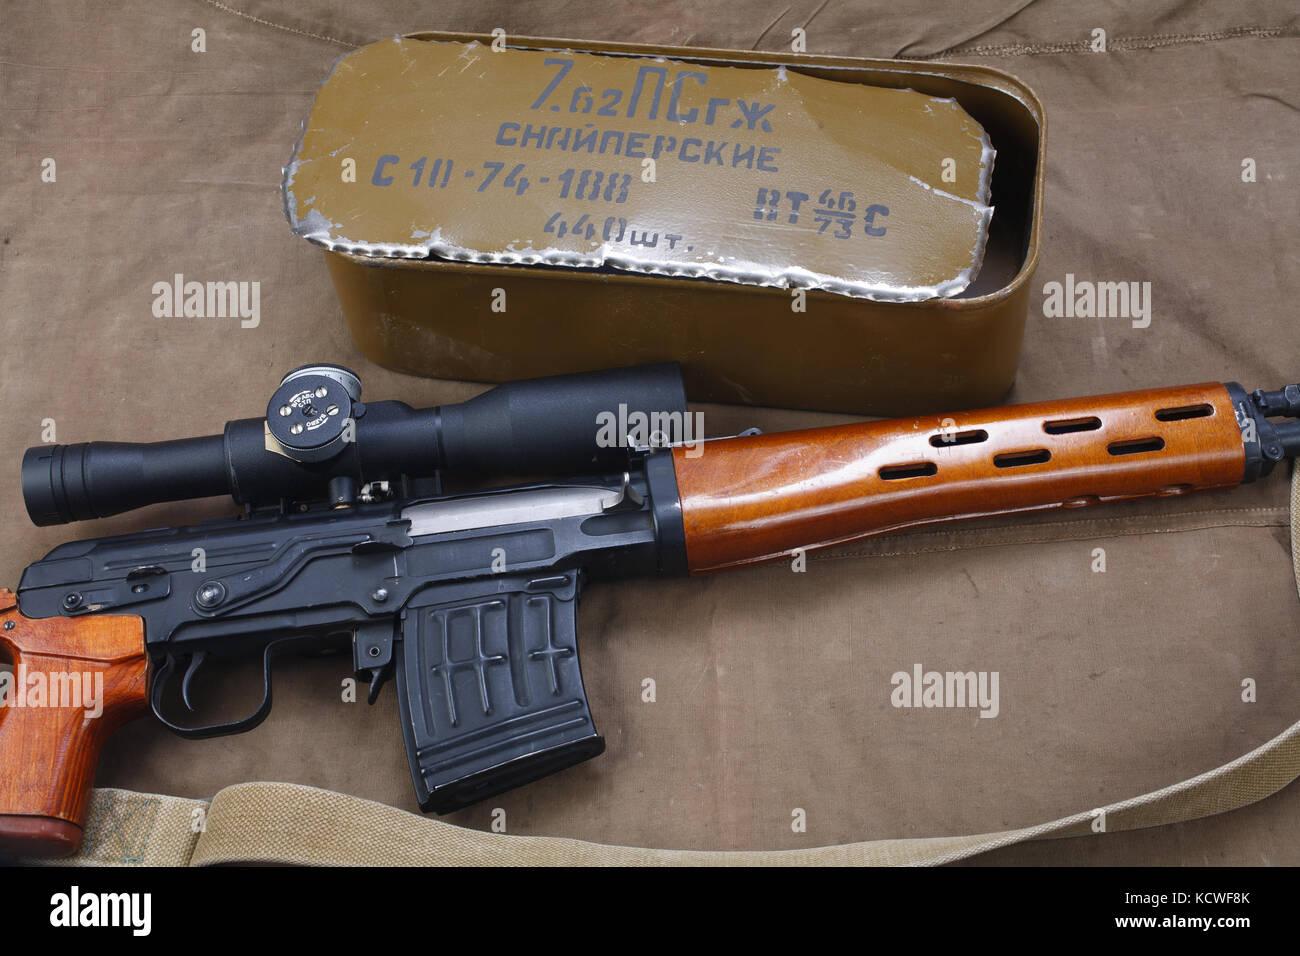 Svd fusil de sniper avec la boîte de munitions sur toile de fond.  l'inscription se traduit comme 'snipers' munitions Photo Stock - Alamy